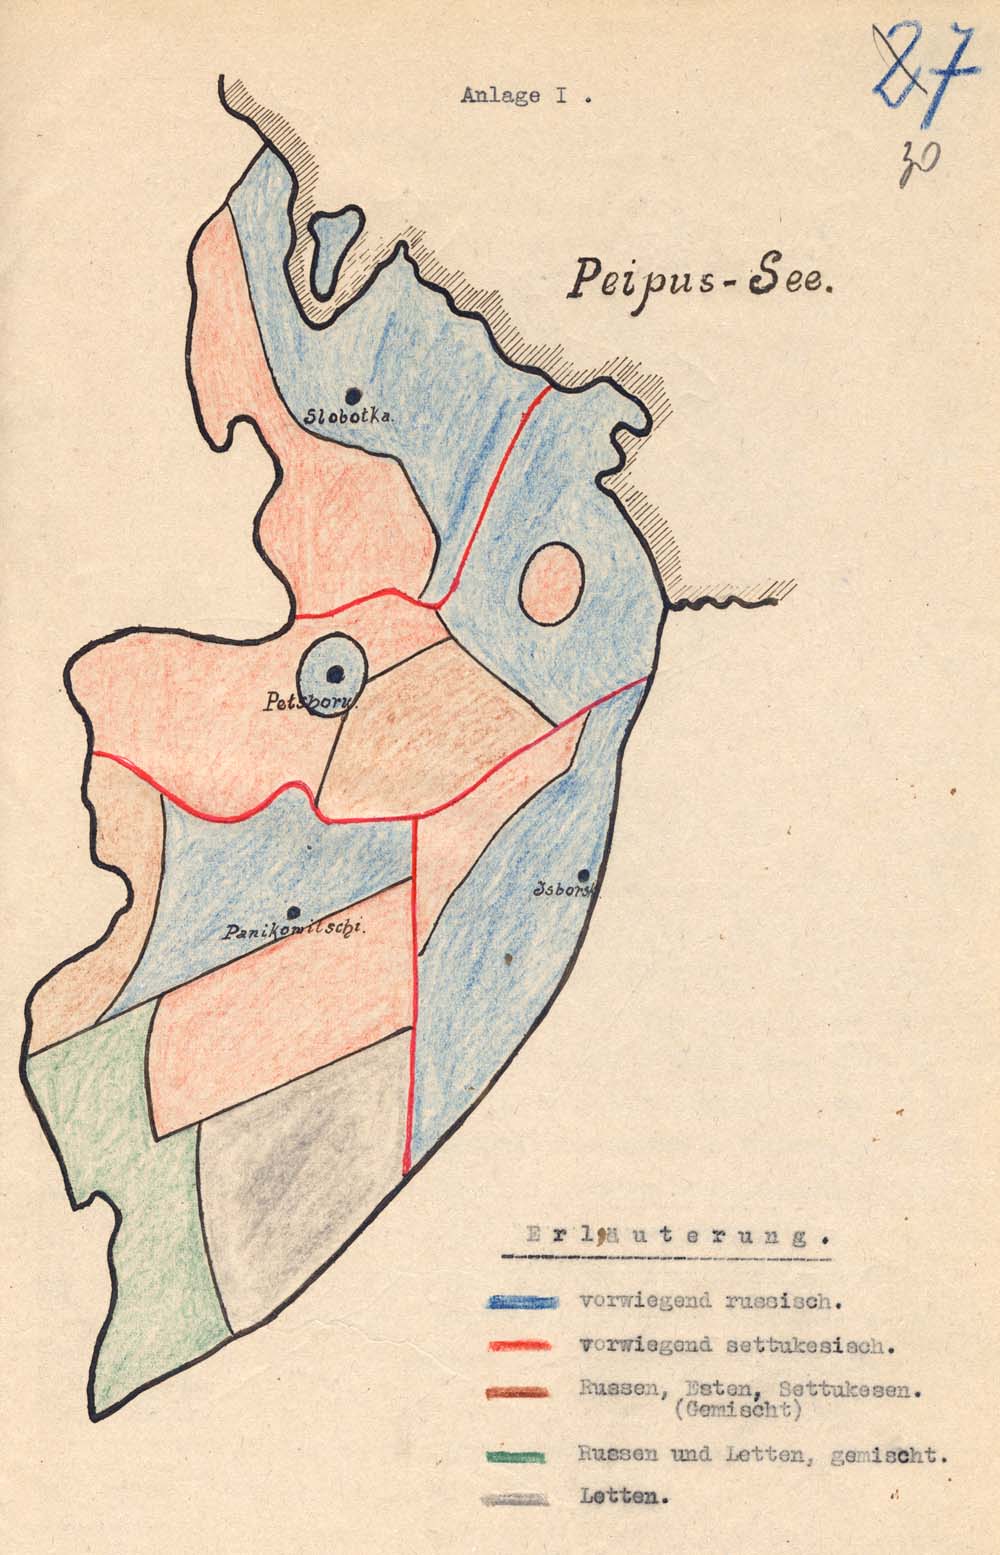 Käsikirjaline visand Petseri maakonna kohta, suvi 1918. Kaardil on näha neli valda ja rahvuslik jaotus. RA, EAA 3724-1-1292, l. 30. 3724_1_1292_30